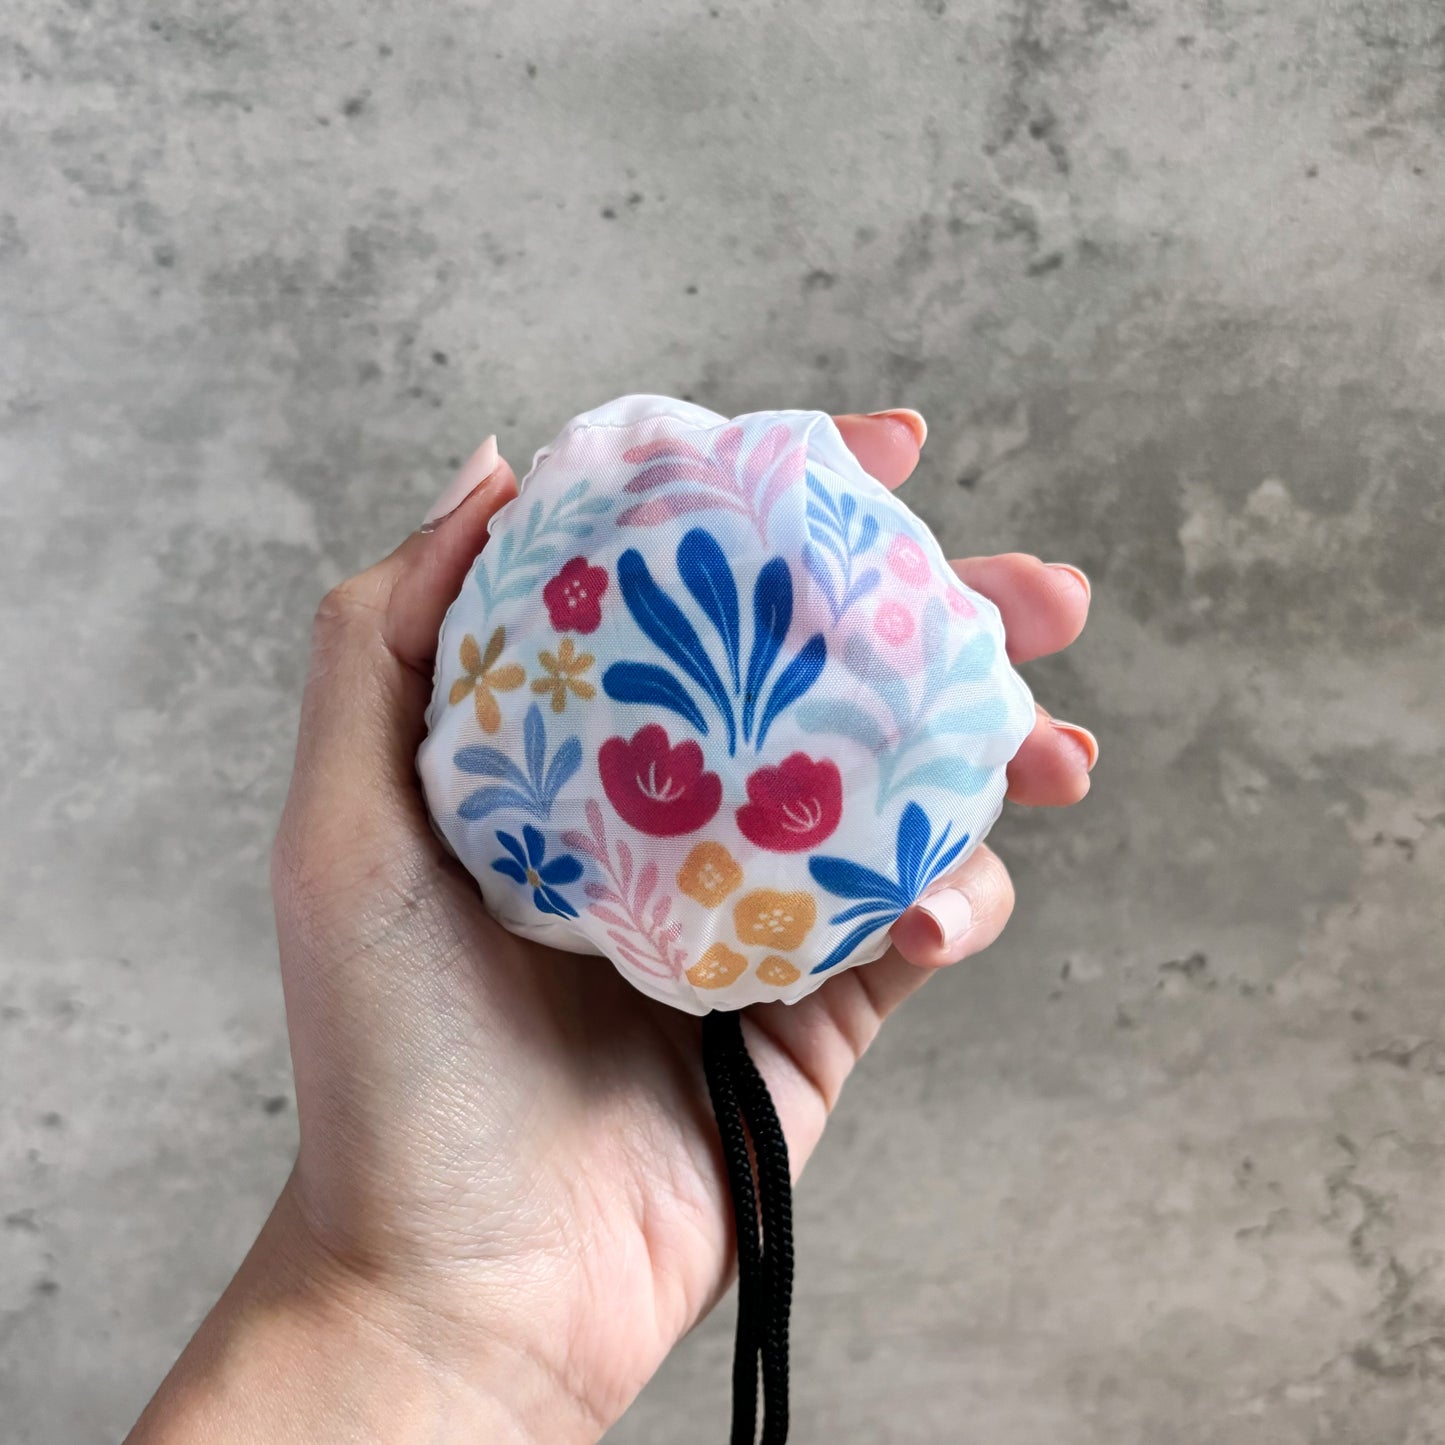 Painter’s Garden Mini Reusable Shopping Bag